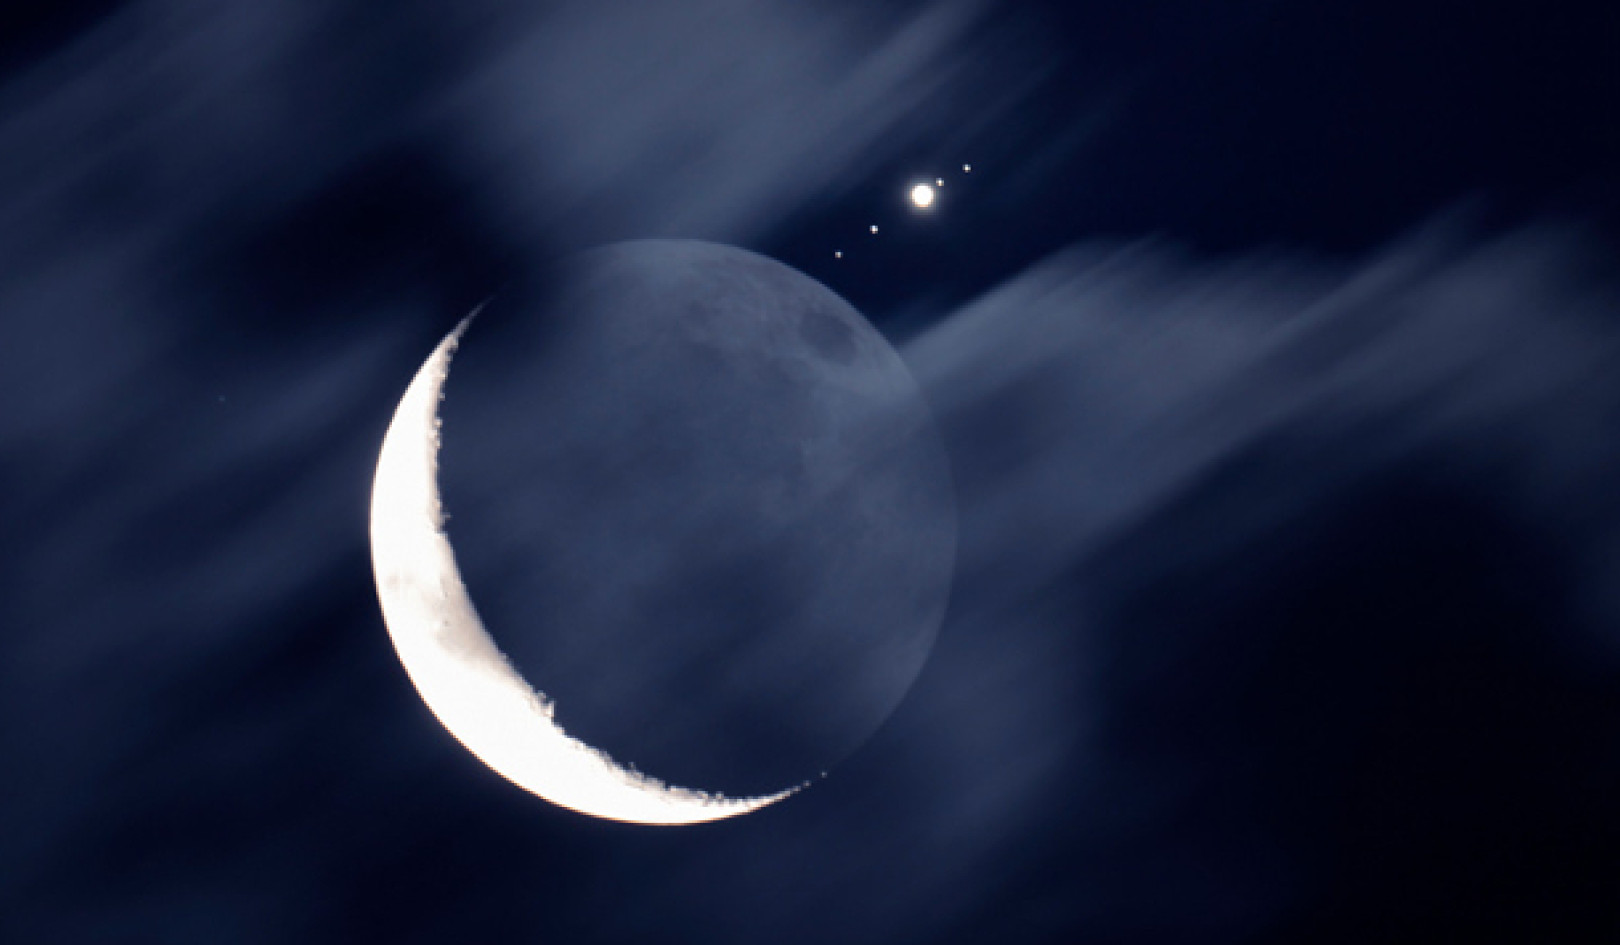 占星概述和星座运势：13 年 19 月 2023 日至 XNUMX 日